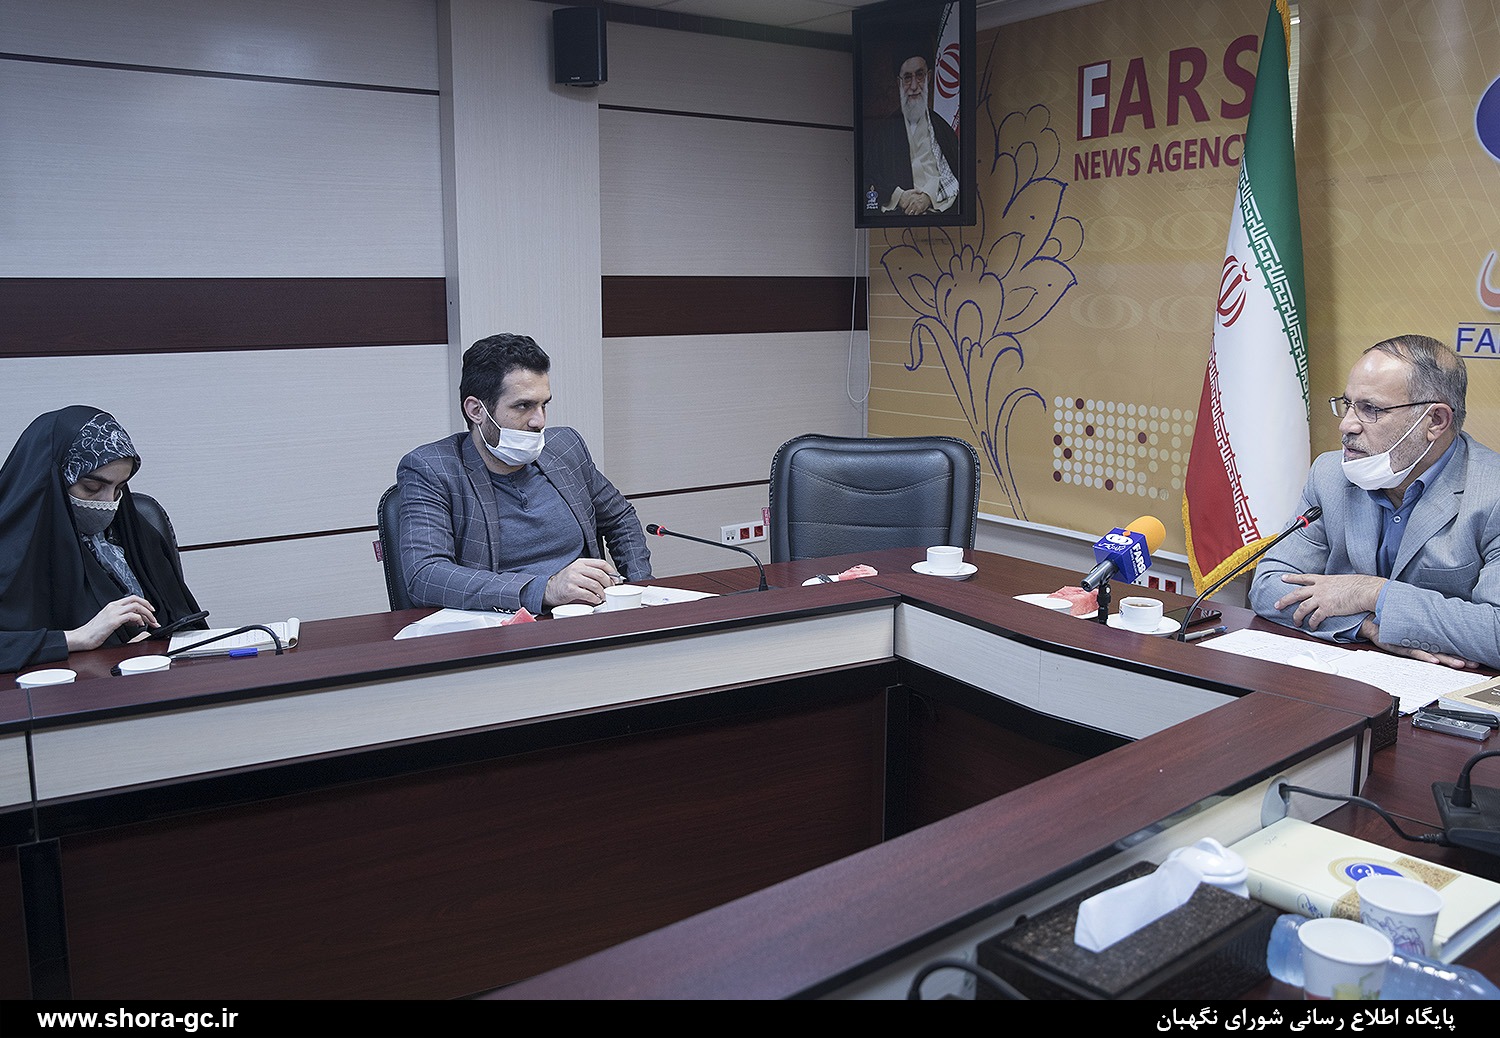 دکتر صادقی مقدم از خبرگزاری فارس بازدید کرد+عکس